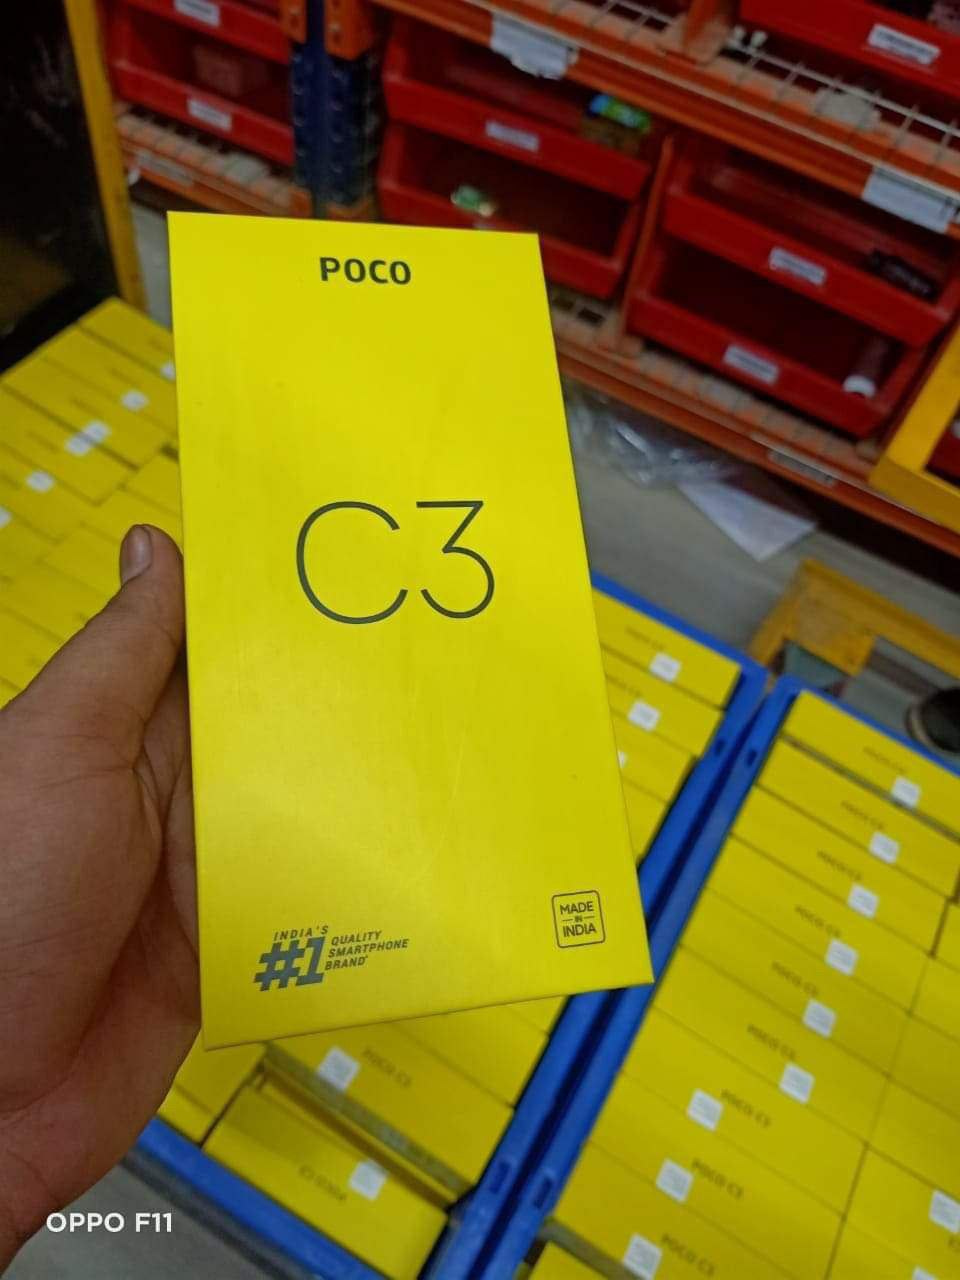 小米POCOC3包装盒曝光,或为Redmi9C更名版